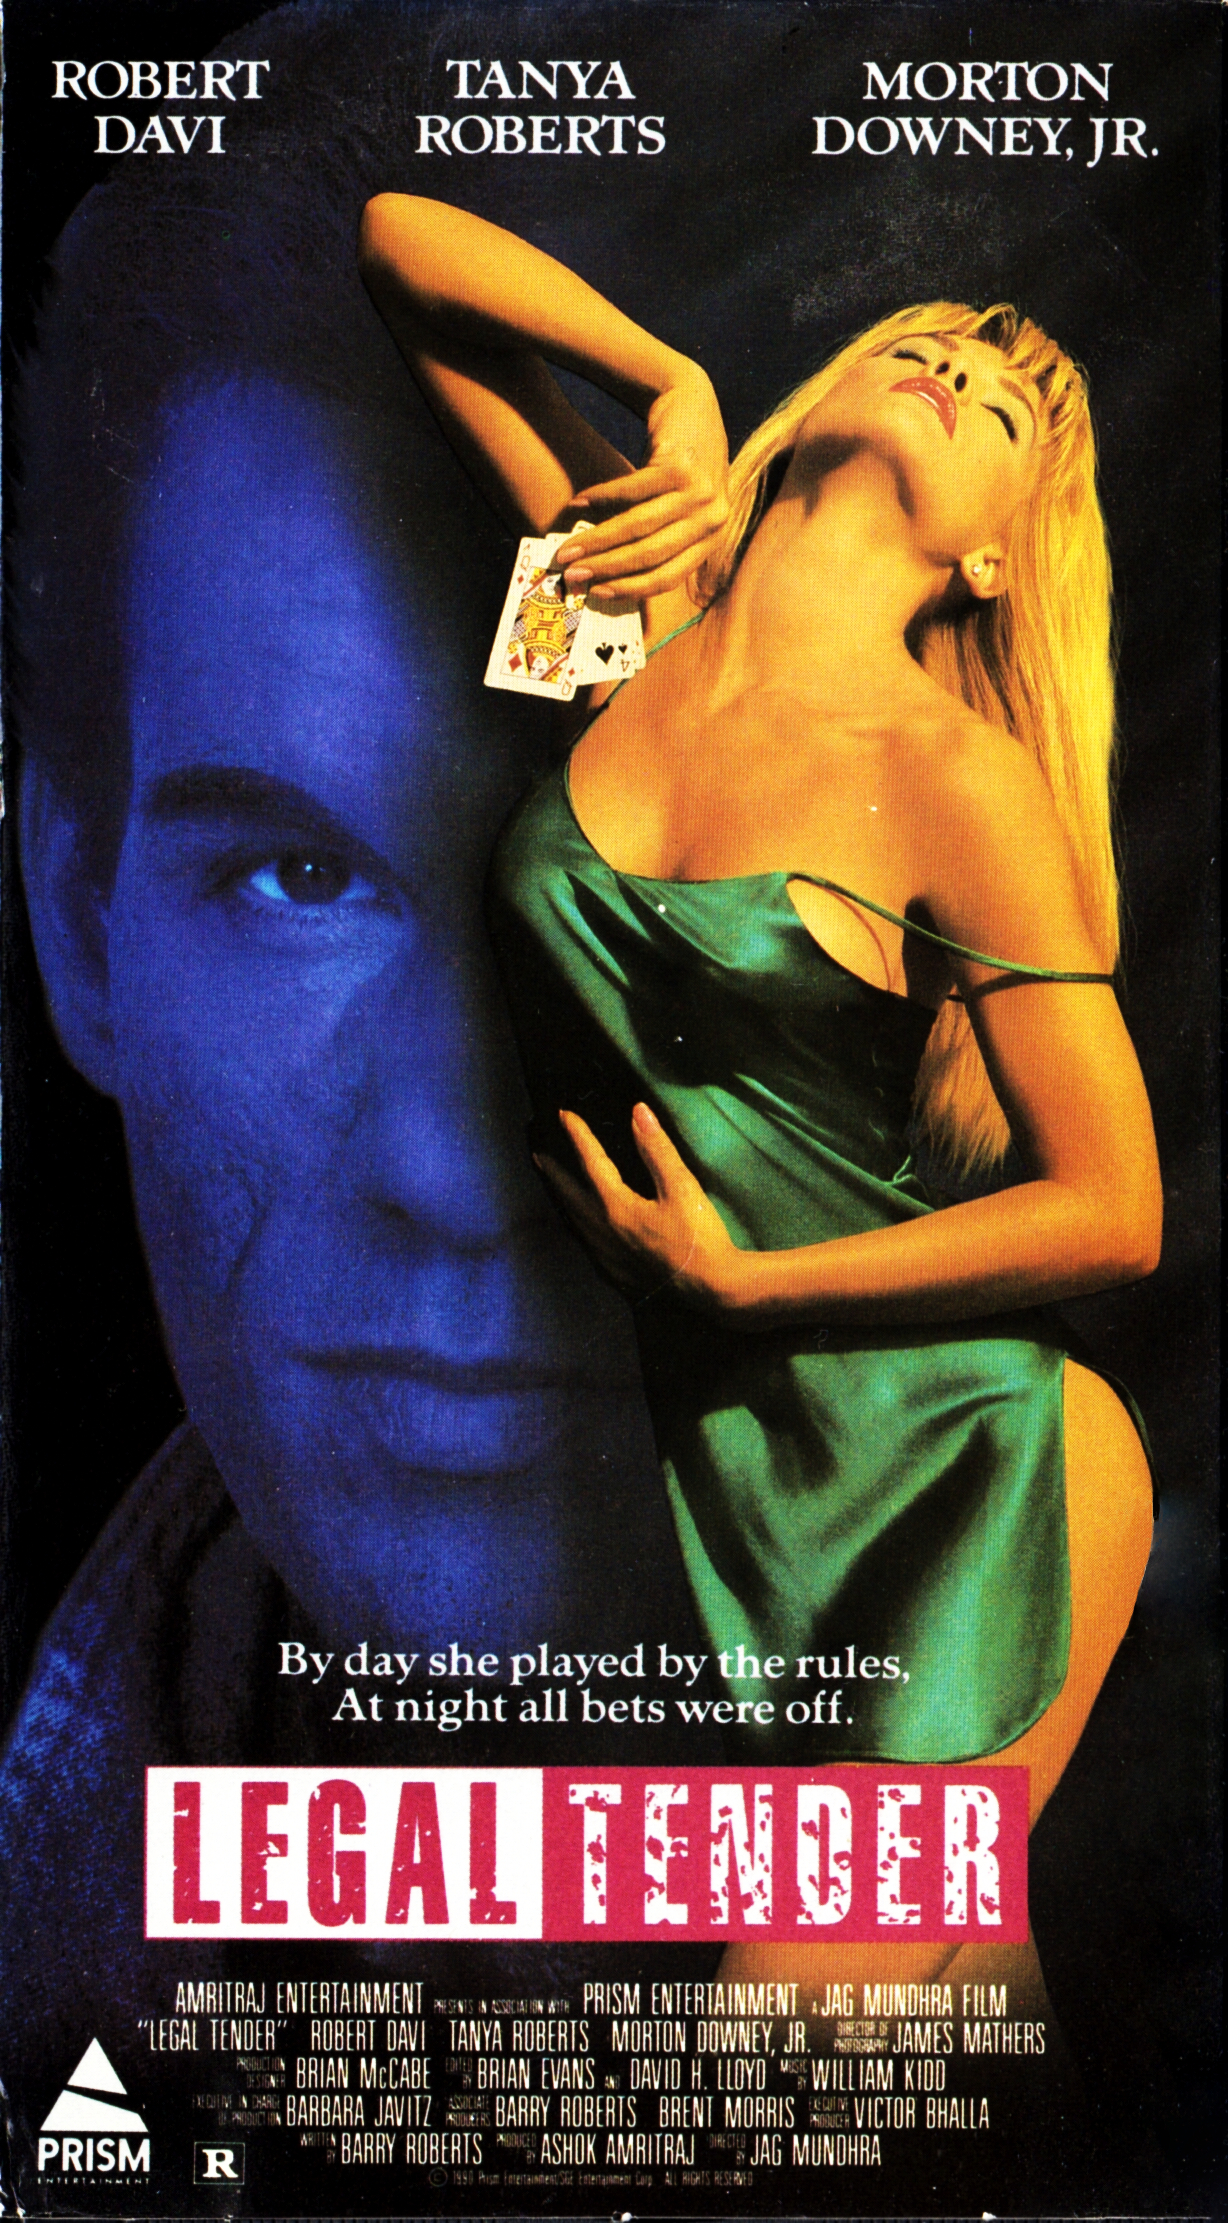 Legal Tender (1991) Screenshot 2 